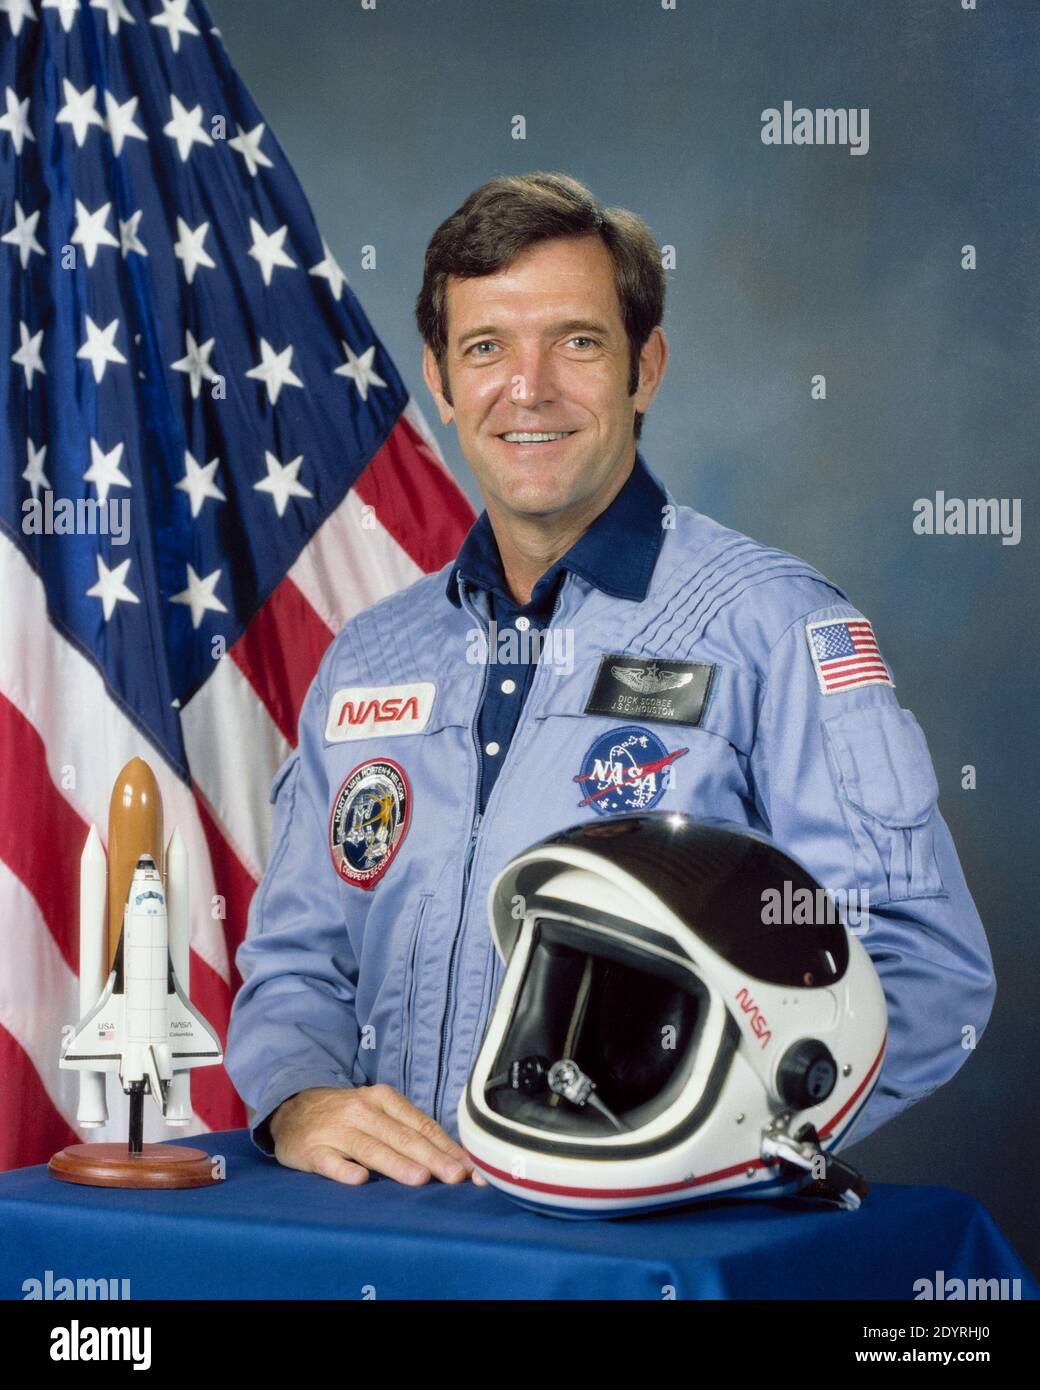 Francis Richard Scobee (19. Mai 1939 – 28. Januar 1986) amerikanischer Pilot, Ingenieur und Astronaut. Er wurde getötet, als er 1986 den Space Shuttle Challenger befehligen musste, der beim Start der Mission STS-51-L einen katastrophalen Auffrischungsfehler erlitt. Stockfoto